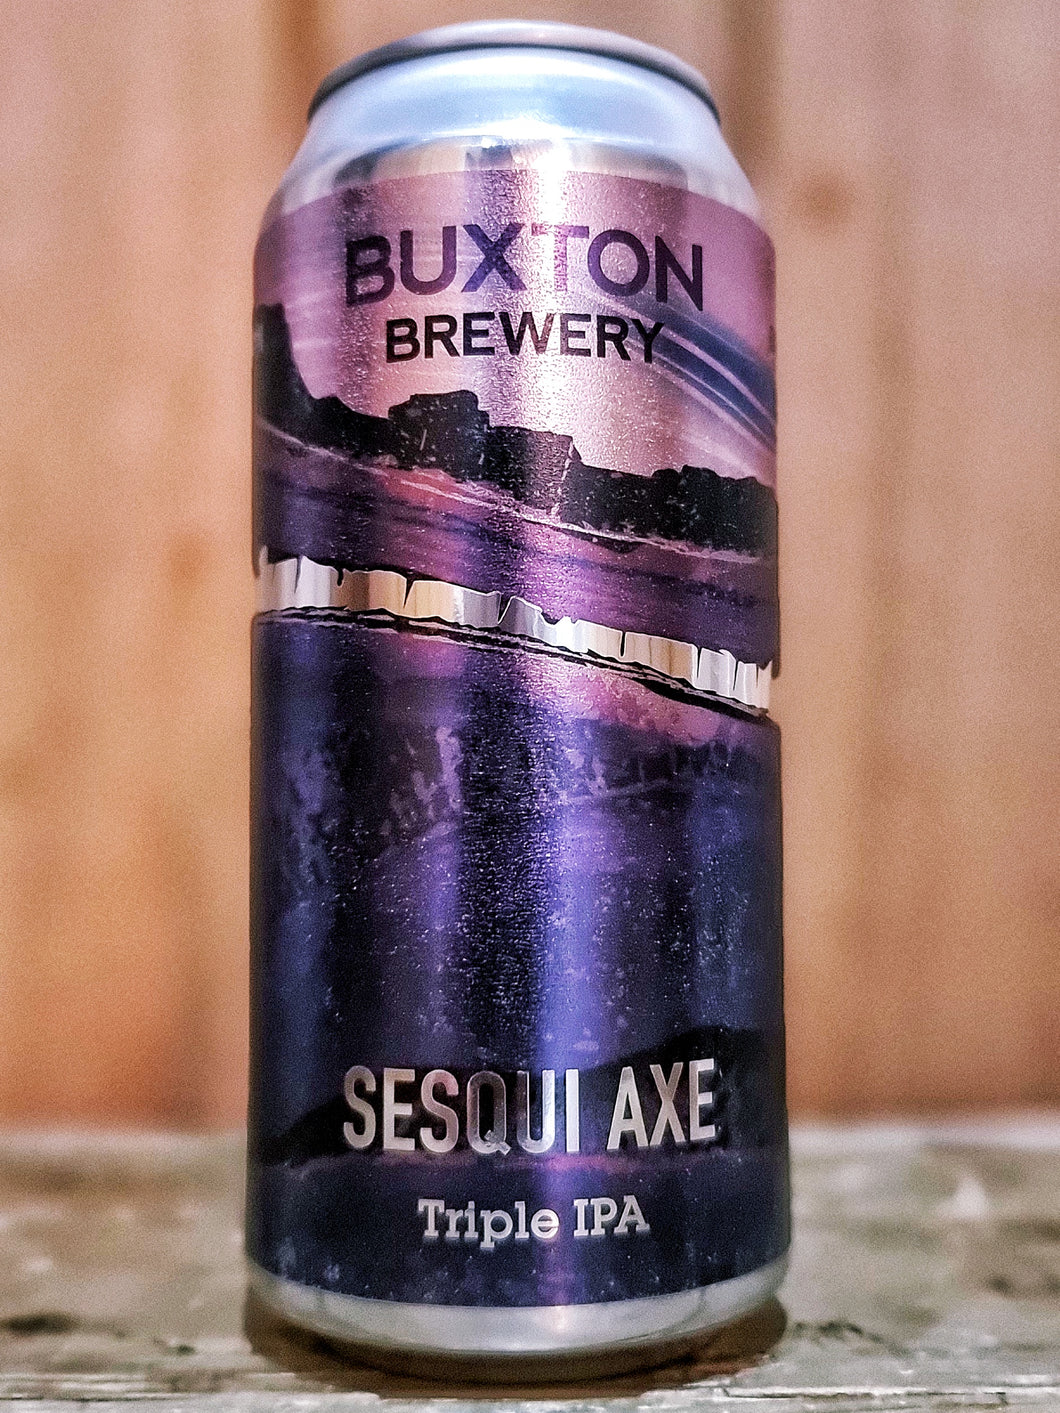 Buxton Brewery - Sesqui Axe